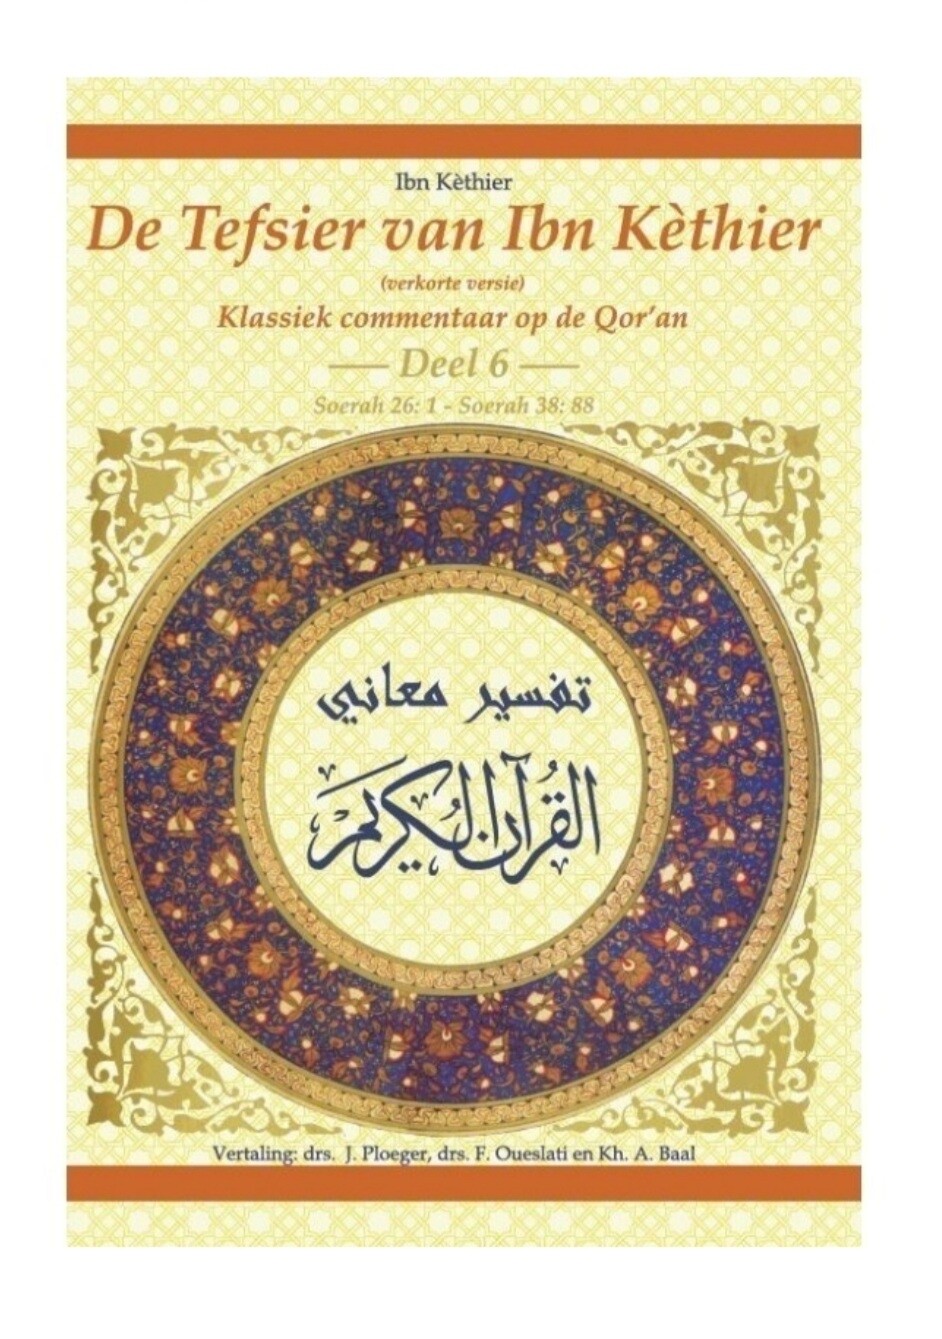 De tafsier van Ibn Kathier deel 6